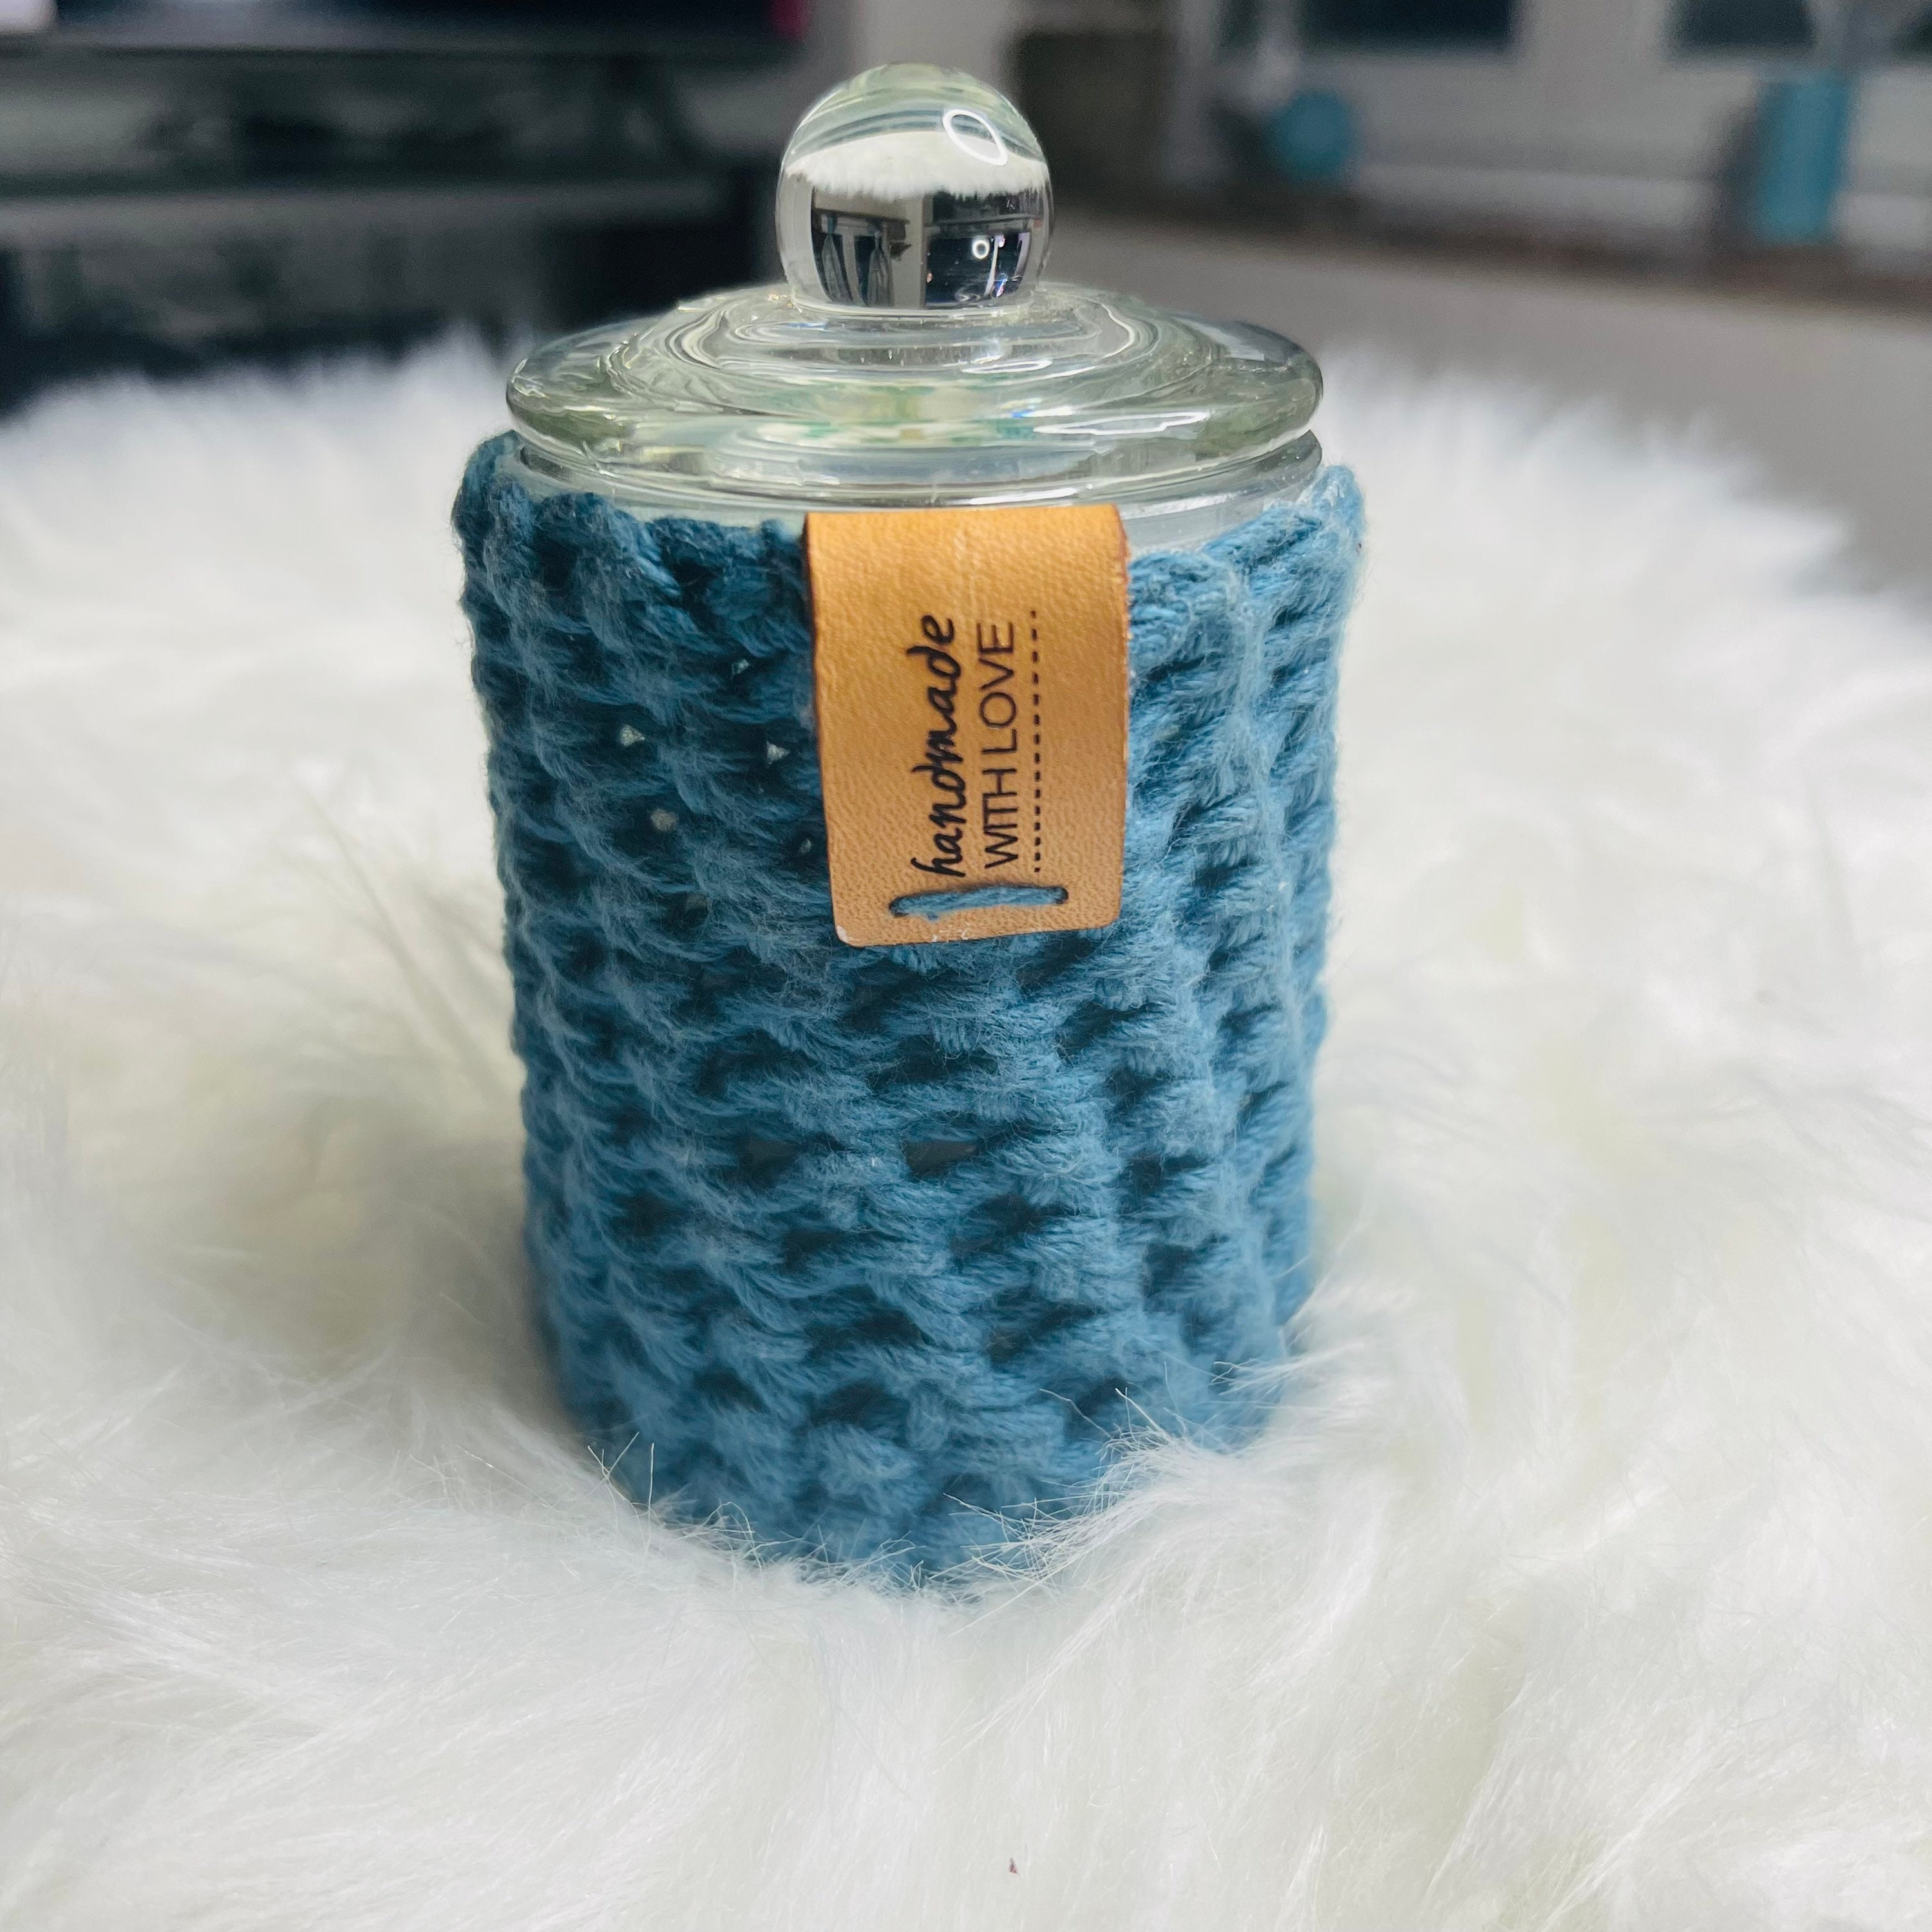 Bougie Végétale Bonbonnière Parfum Pivoine Pot Crochet Bleu